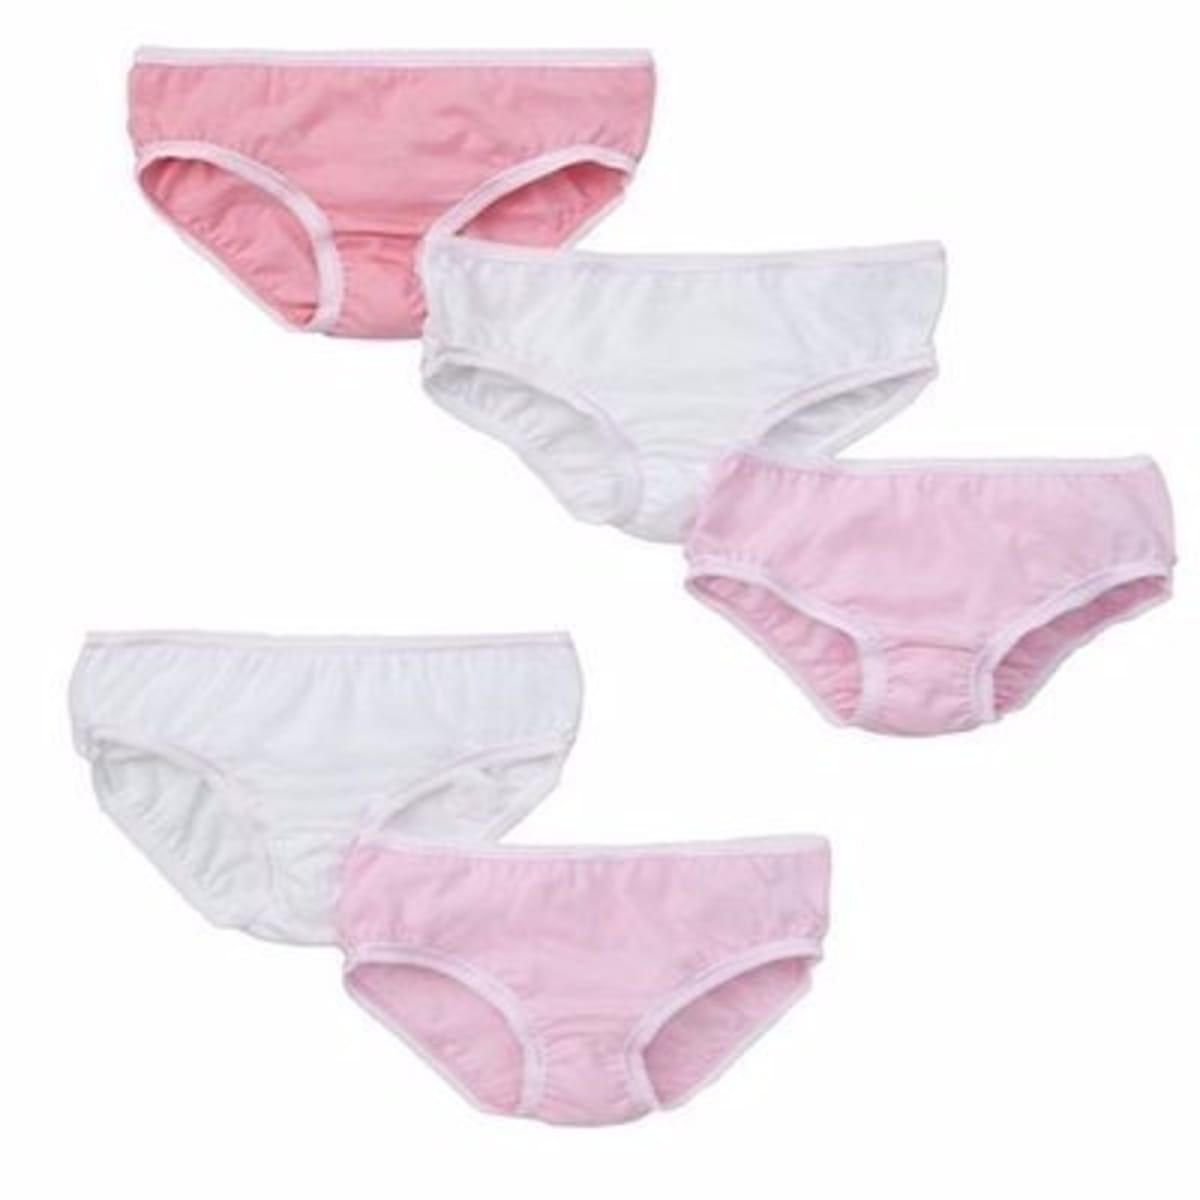 Baby Girl Panties - Pack Of 5